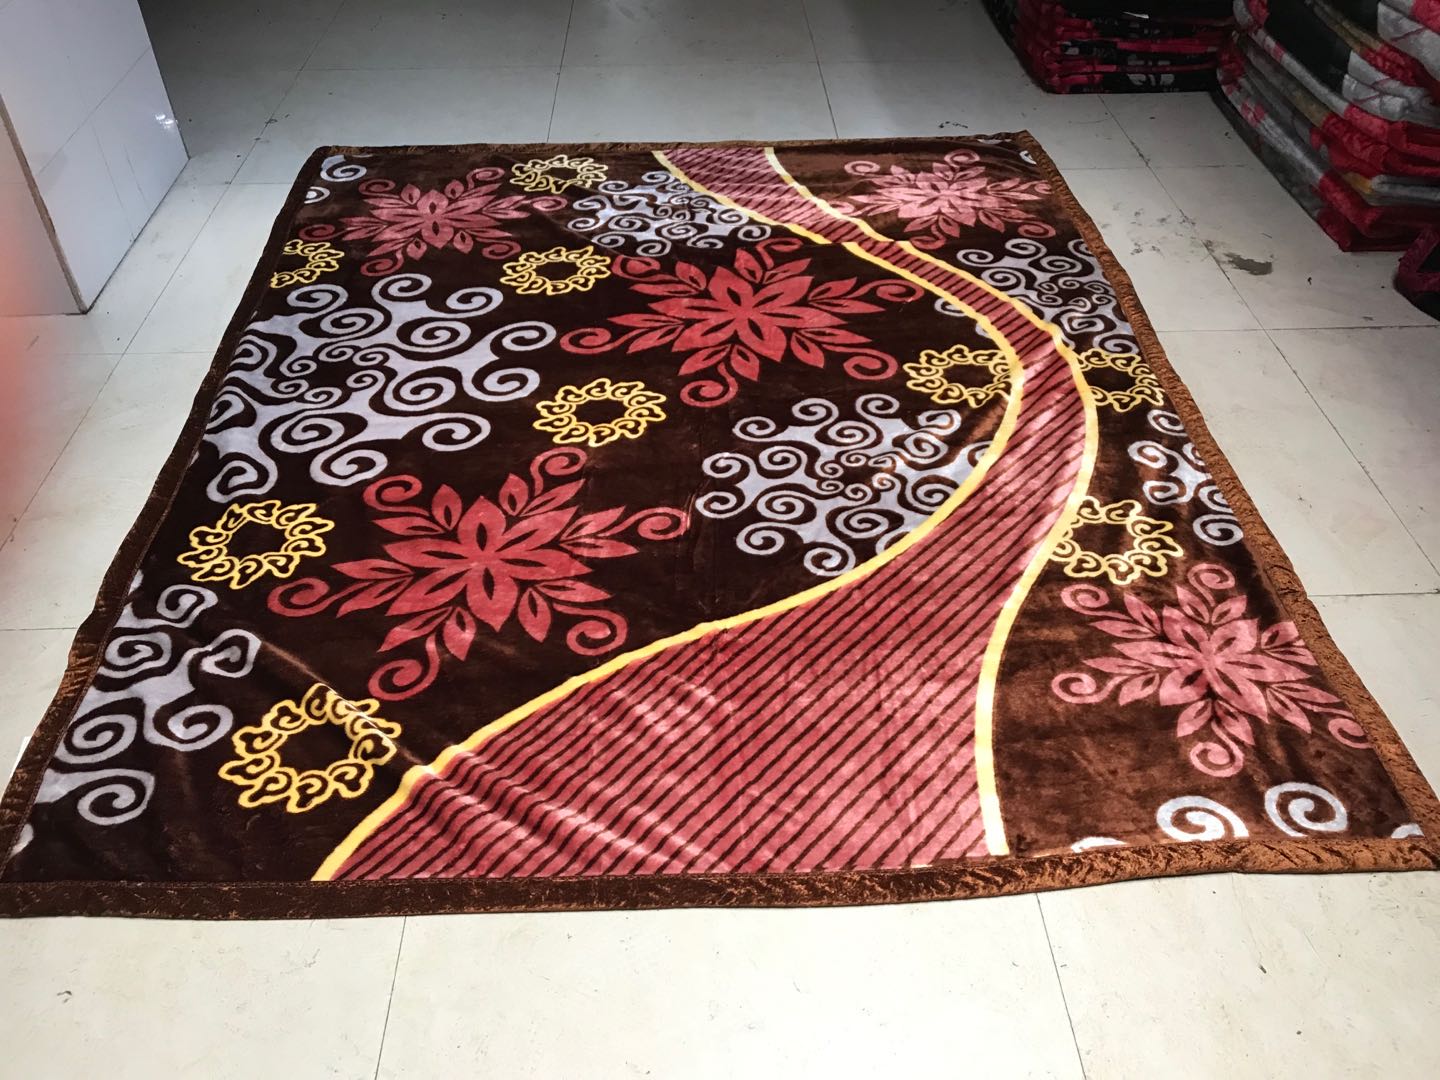 厂家批发外贸毛毯绒毯法兰绒珊瑚绒拉舍尔毛毯尺寸可定制花色74